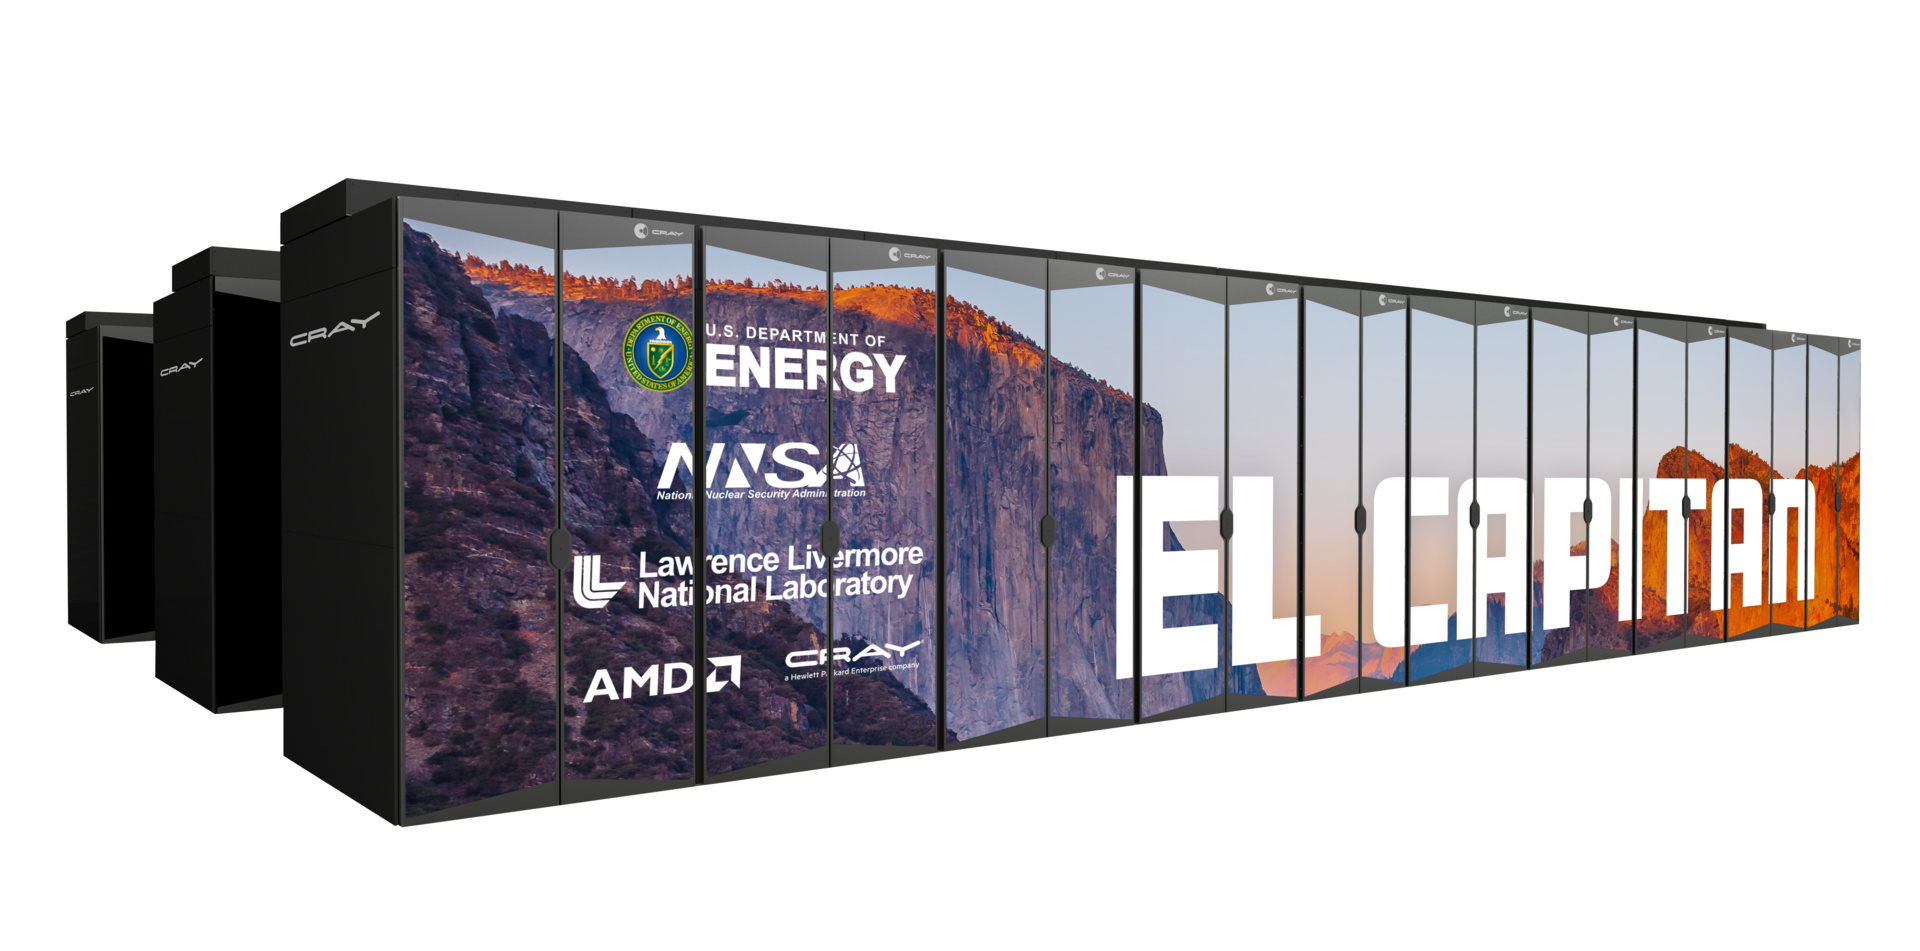 Mit 2 ExaFLOPS soll El Capitan ab 2023 der schnellste Supercomputer der Welt sein